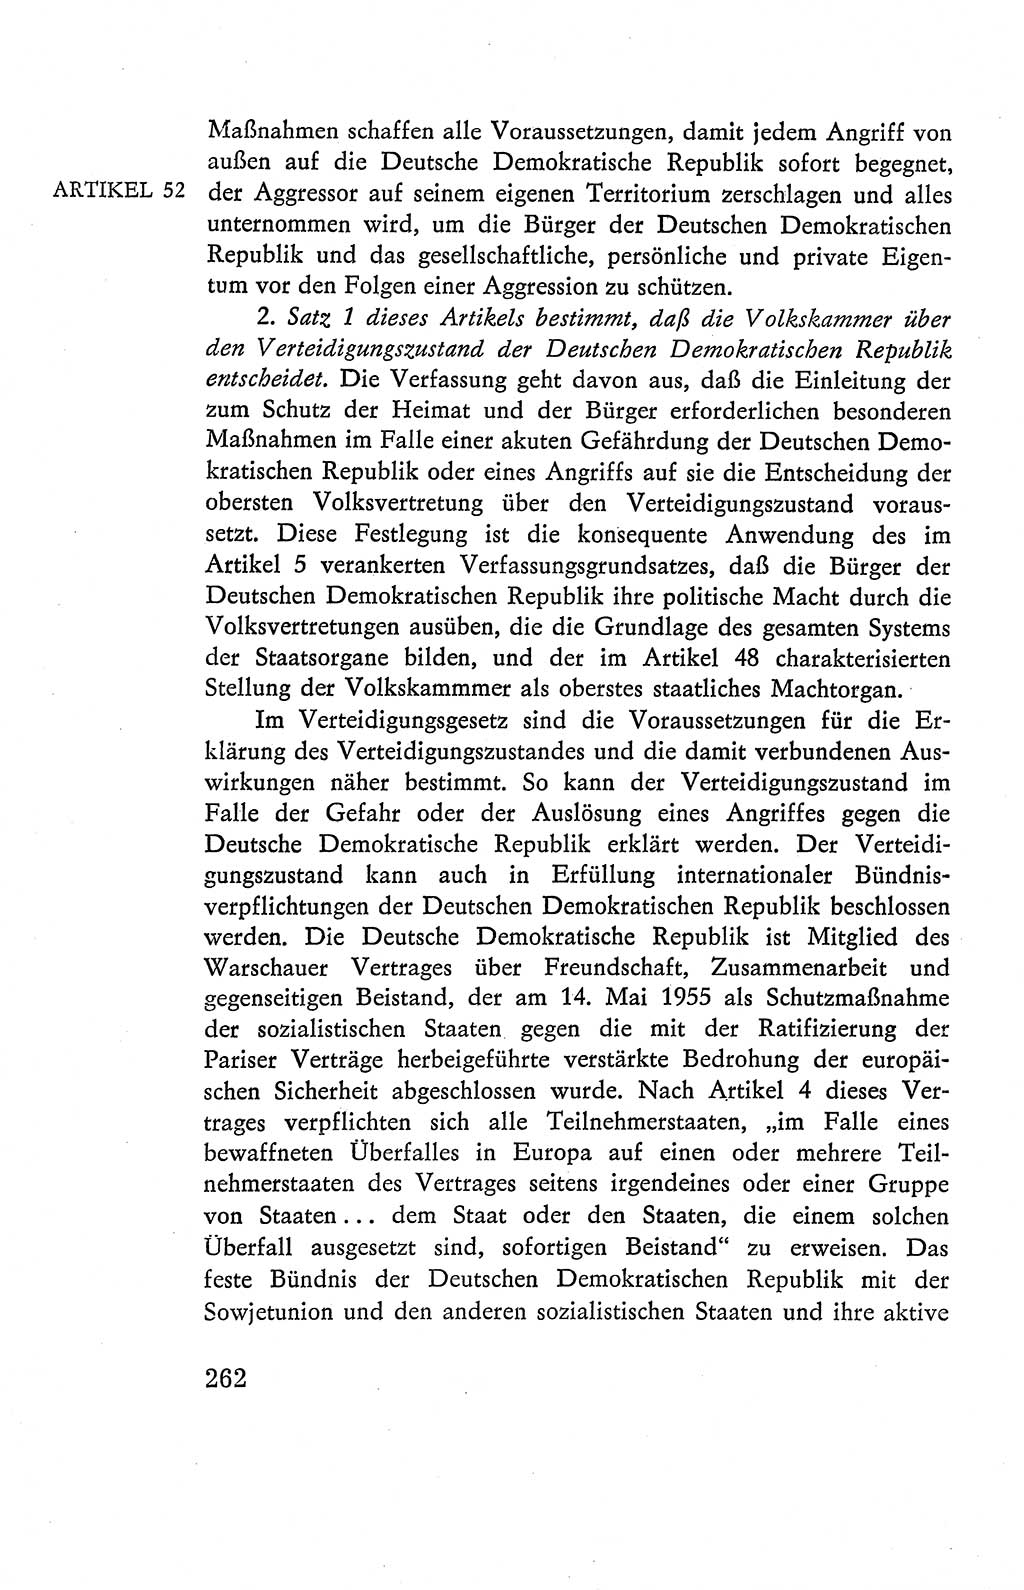 Verfassung der Deutschen Demokratischen Republik (DDR), Dokumente, Kommentar 1969, Band 2, Seite 262 (Verf. DDR Dok. Komm. 1969, Bd. 2, S. 262)